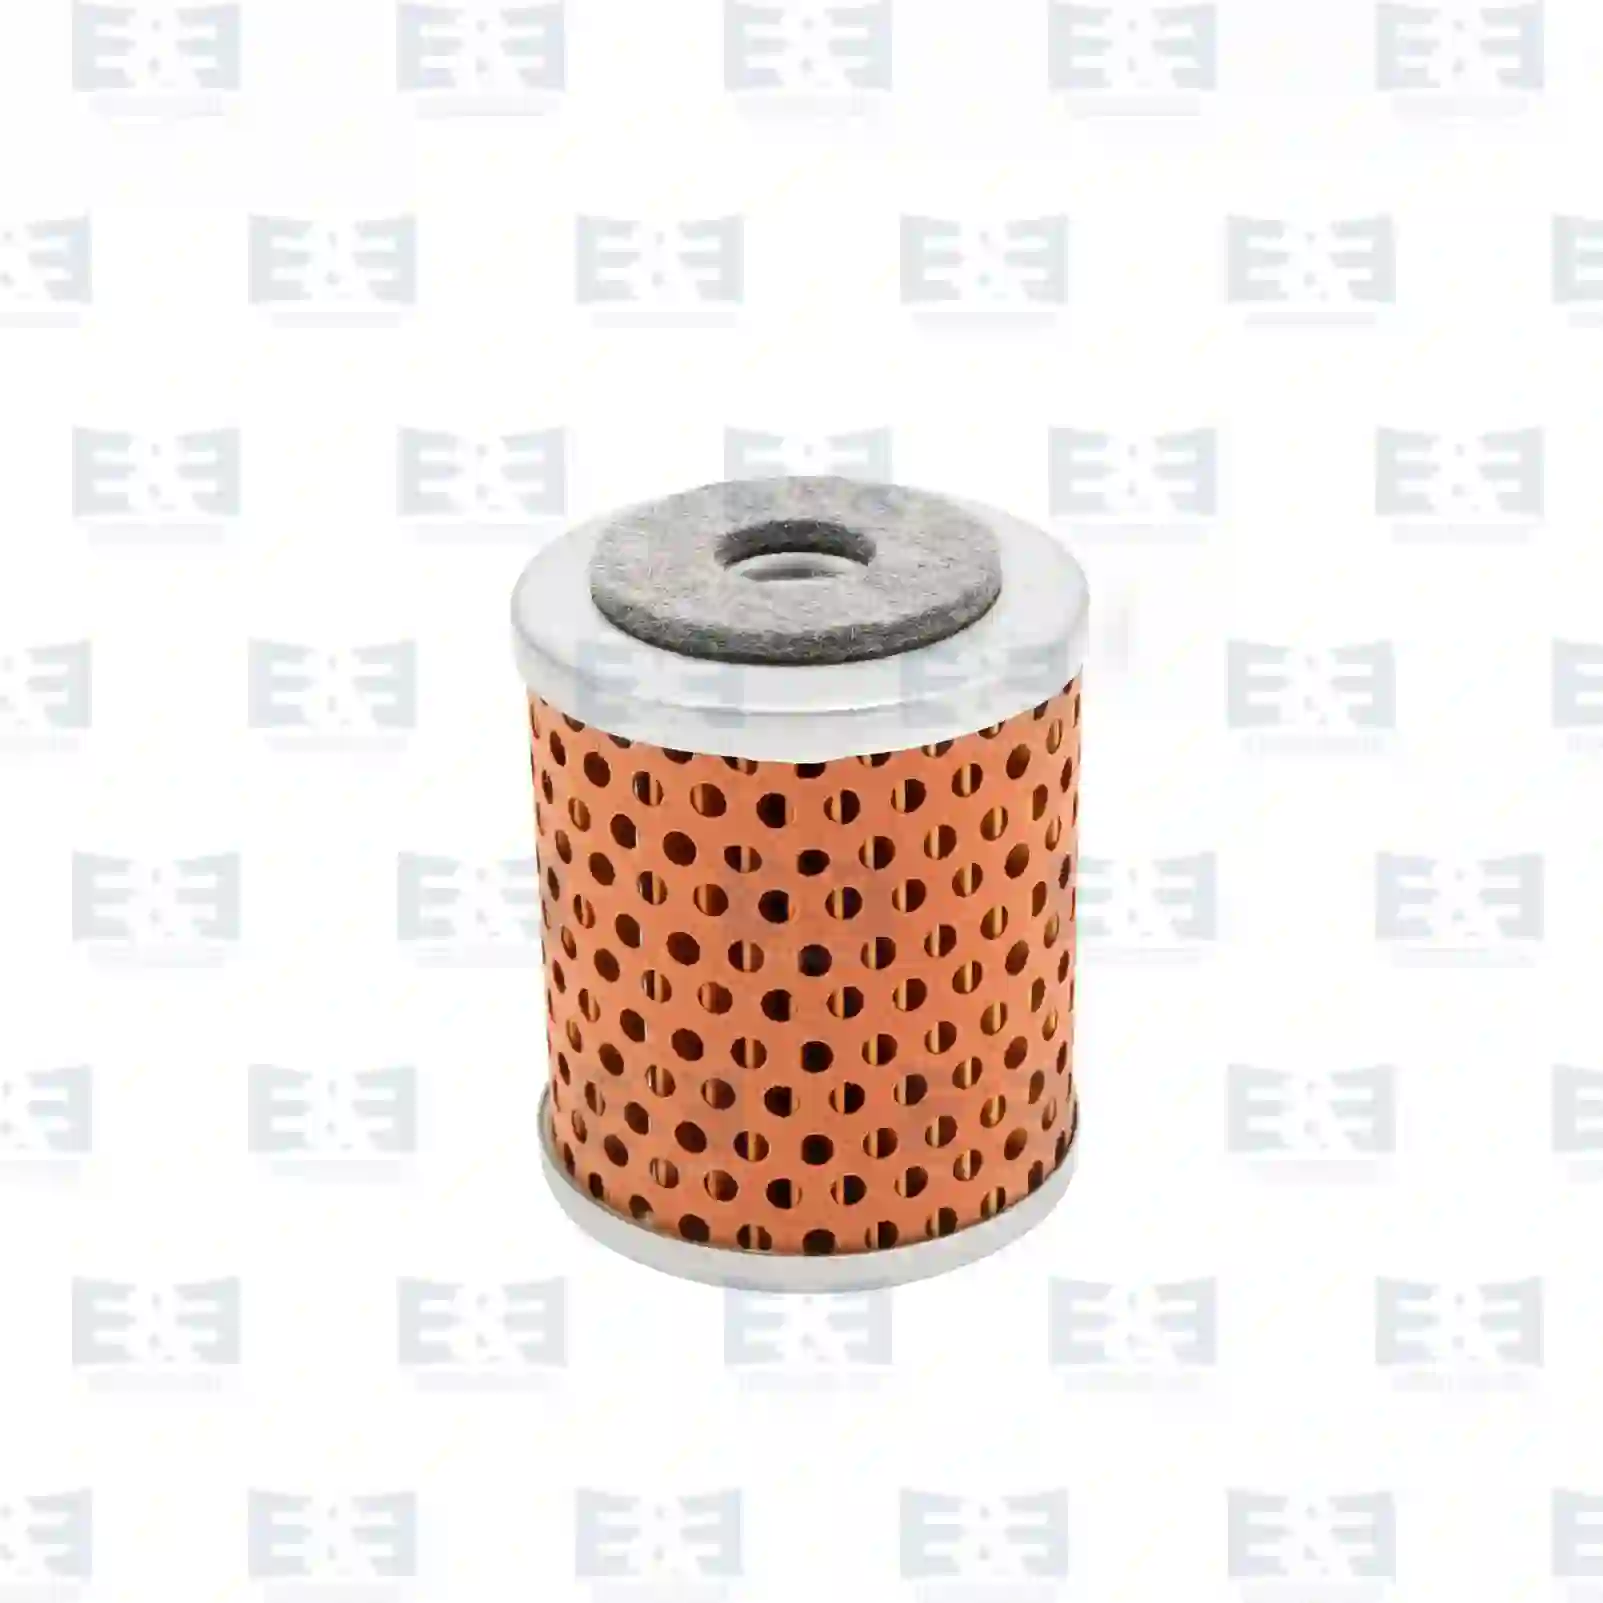 Fuel filter insert, 2E2287360, 209930450, 01909108, 5410112, 7984944, 161087105, 0000225551, 225551, 01909108, 209930450, 81125030039, 0008352647, 5021188353 ||  2E2287360 E&E Truck Spare Parts | Truck Spare Parts, Auotomotive Spare Parts Fuel filter insert, 2E2287360, 209930450, 01909108, 5410112, 7984944, 161087105, 0000225551, 225551, 01909108, 209930450, 81125030039, 0008352647, 5021188353 ||  2E2287360 E&E Truck Spare Parts | Truck Spare Parts, Auotomotive Spare Parts